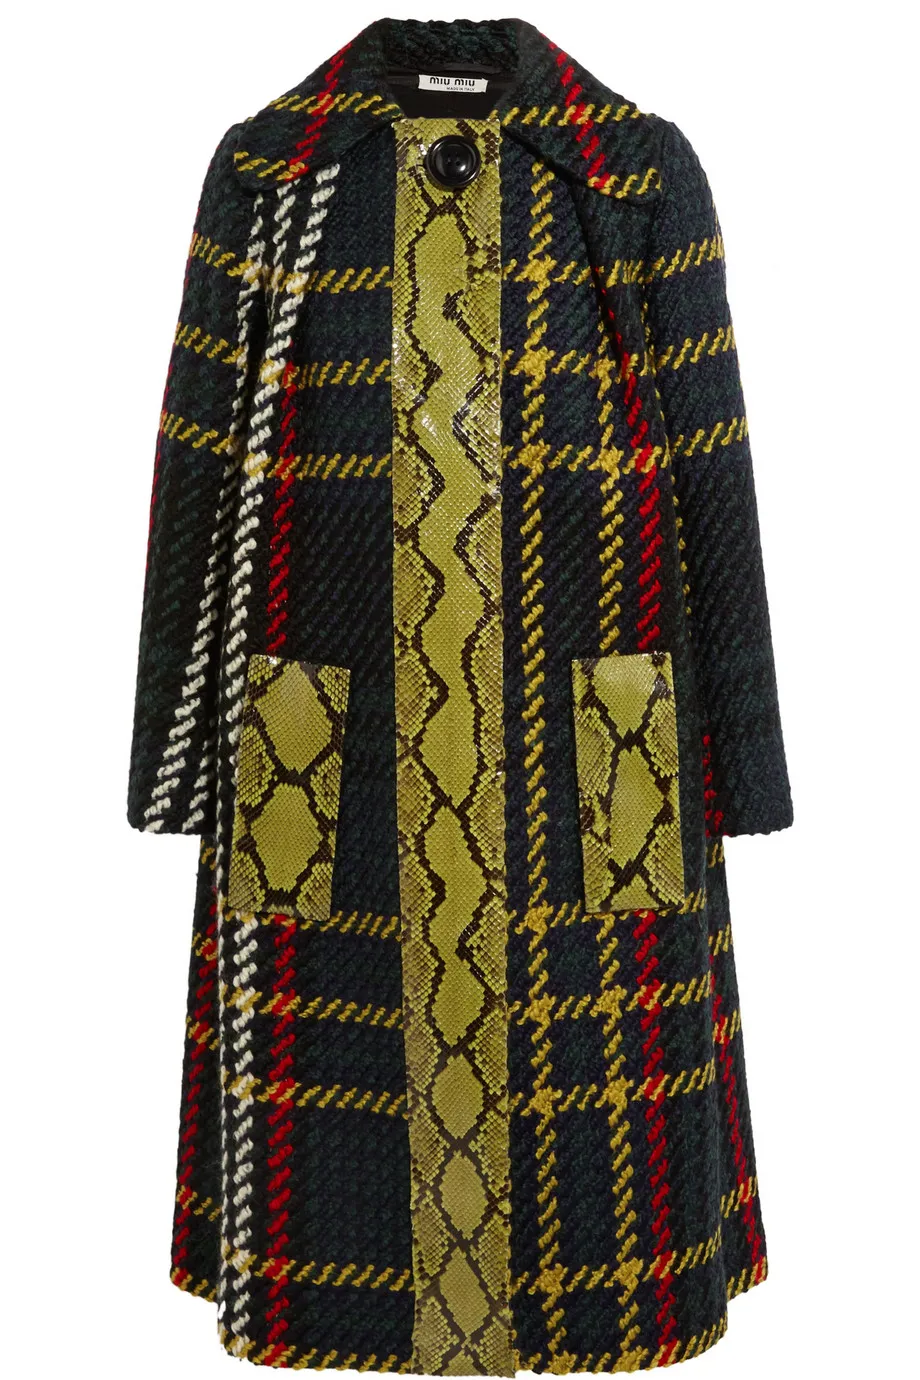 ファッション格子縞のGirdプリント女性コート覆われたボタントレンチ15100905